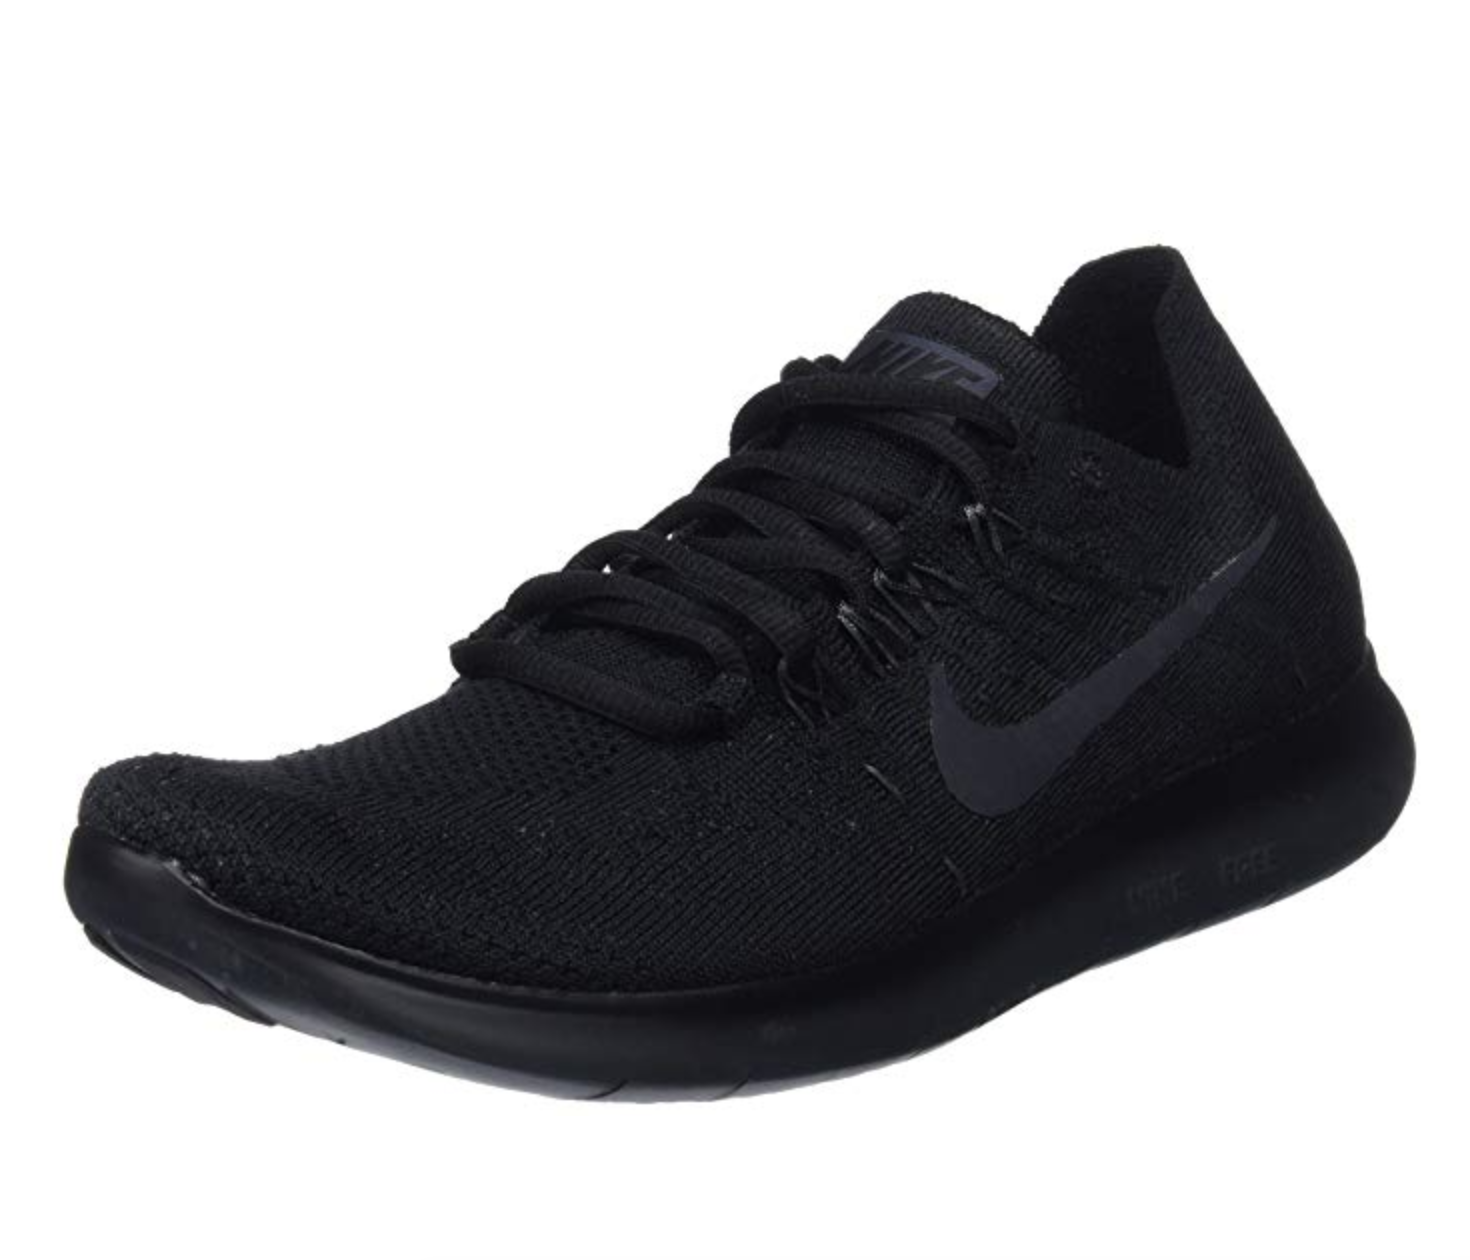 Nike Women's Free RN Flyknit Running Shoe